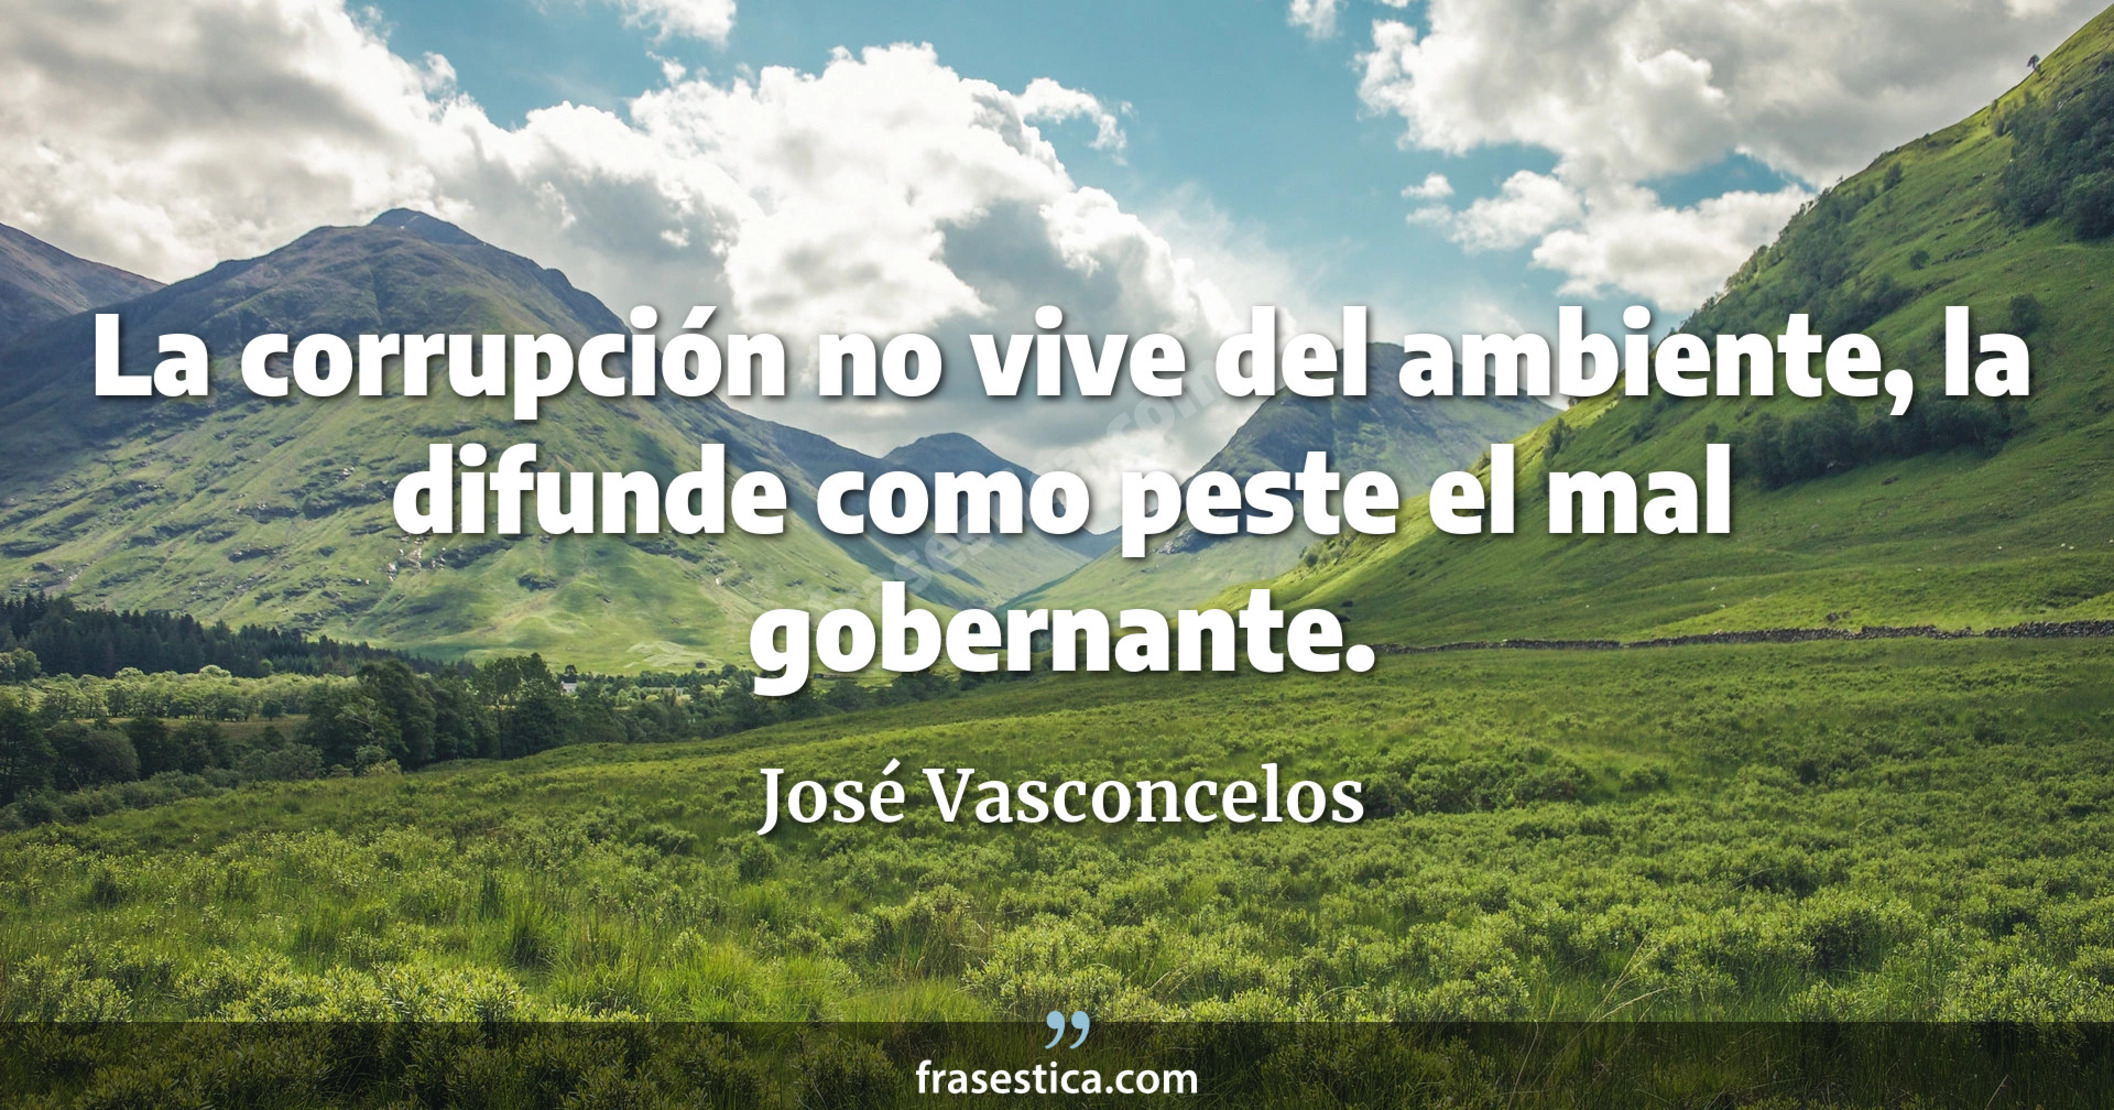 La corrupción no vive del ambiente, la difunde como peste el mal gobernante. - José Vasconcelos